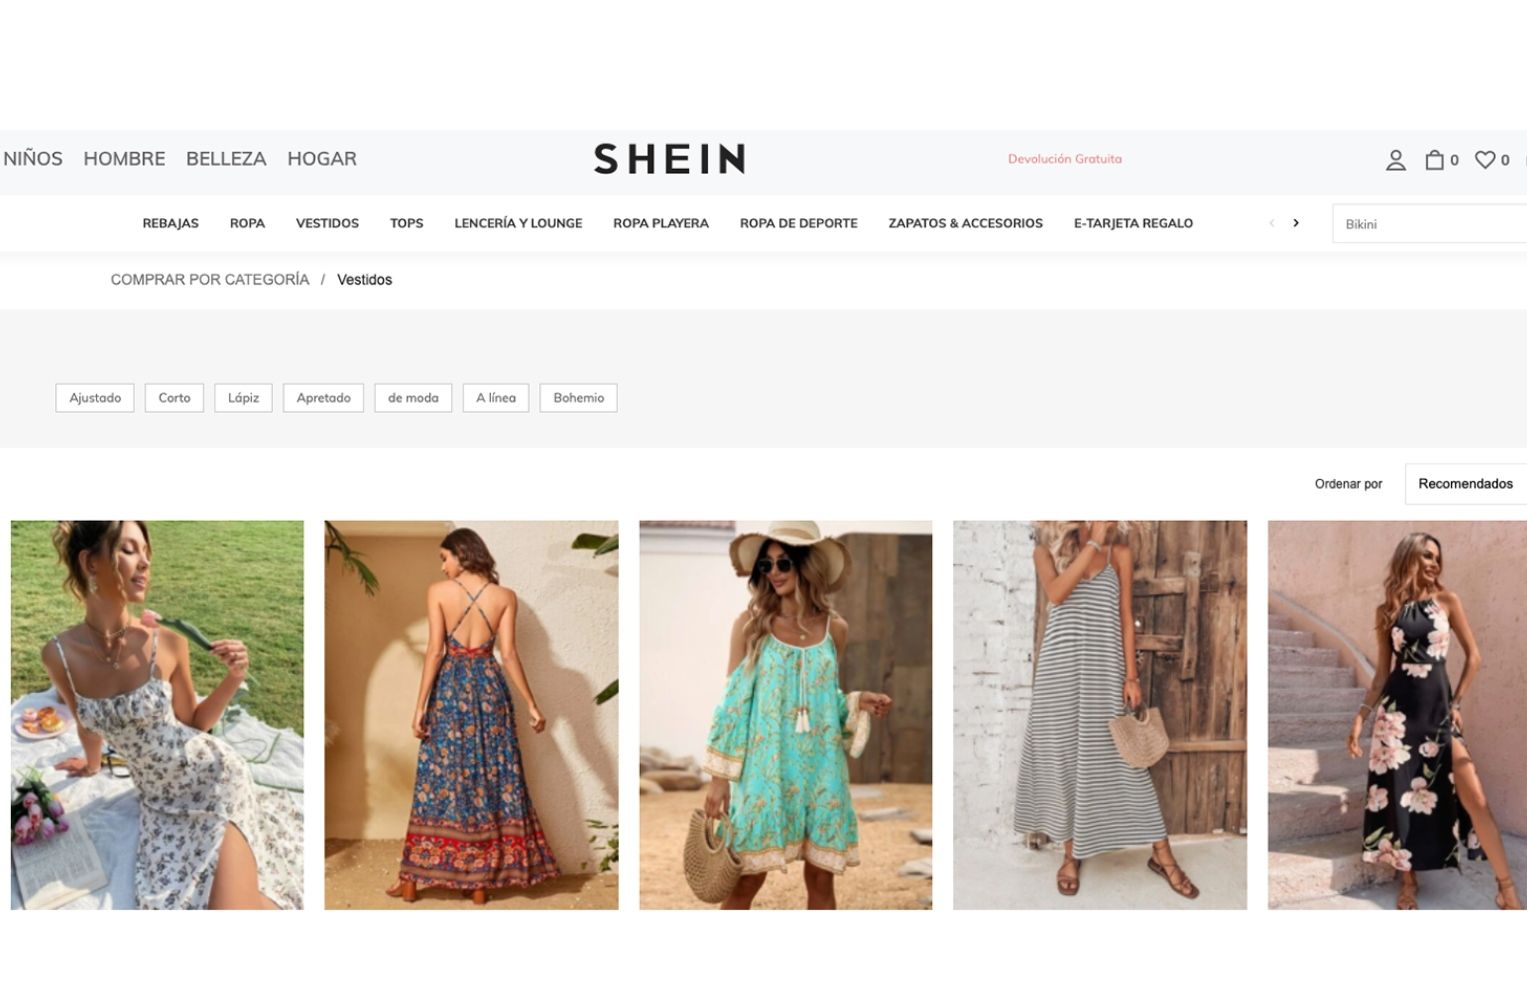 Shein, longe de fechar em Europa, abre sua primeira loja em Espanha:  contamos-te onde e quando